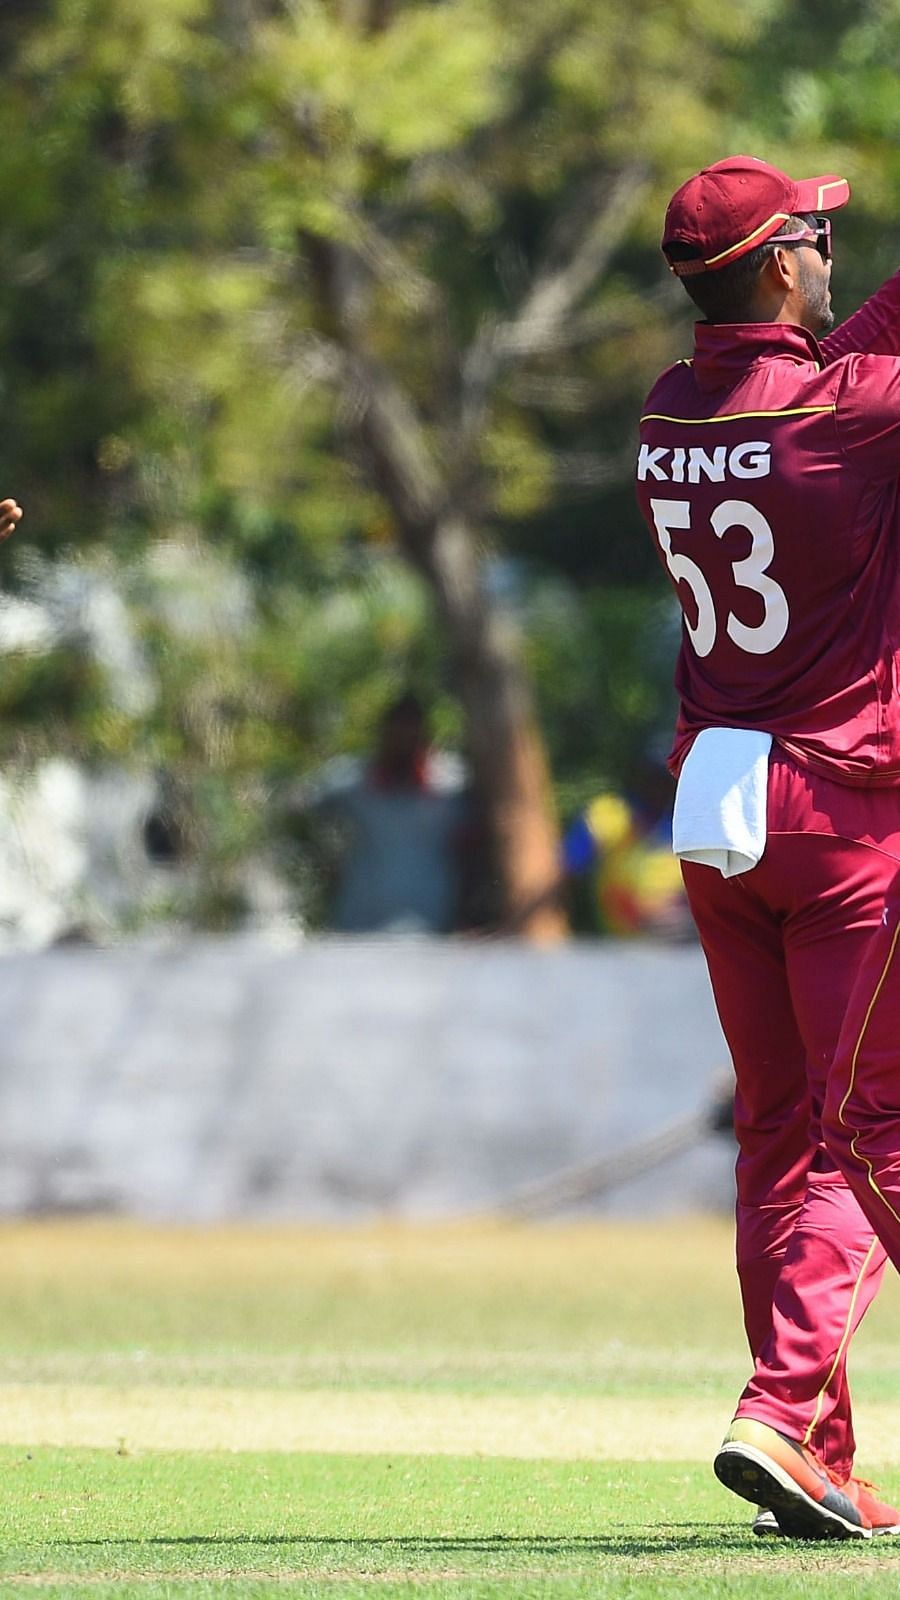 Sri Lanka Vs West Indies पहल वनड प र व य Predicted Xi प र ड क शन ल इव स ट र म ग और प च र प र ट